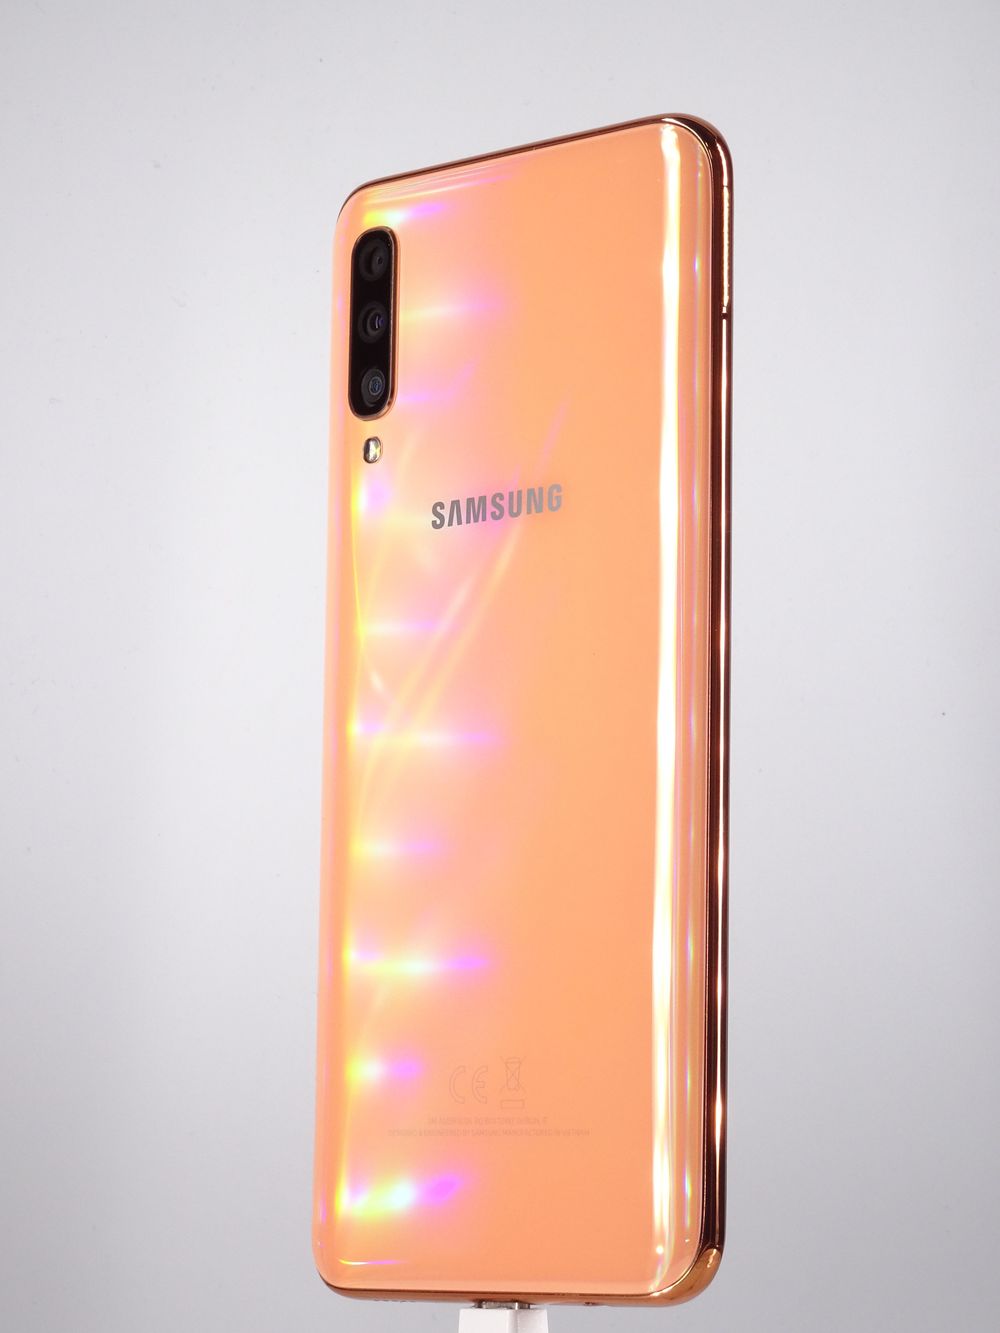 Мобилен телефон Samsung, Galaxy A50 (2019), 64 GB, Coral,  Като нов